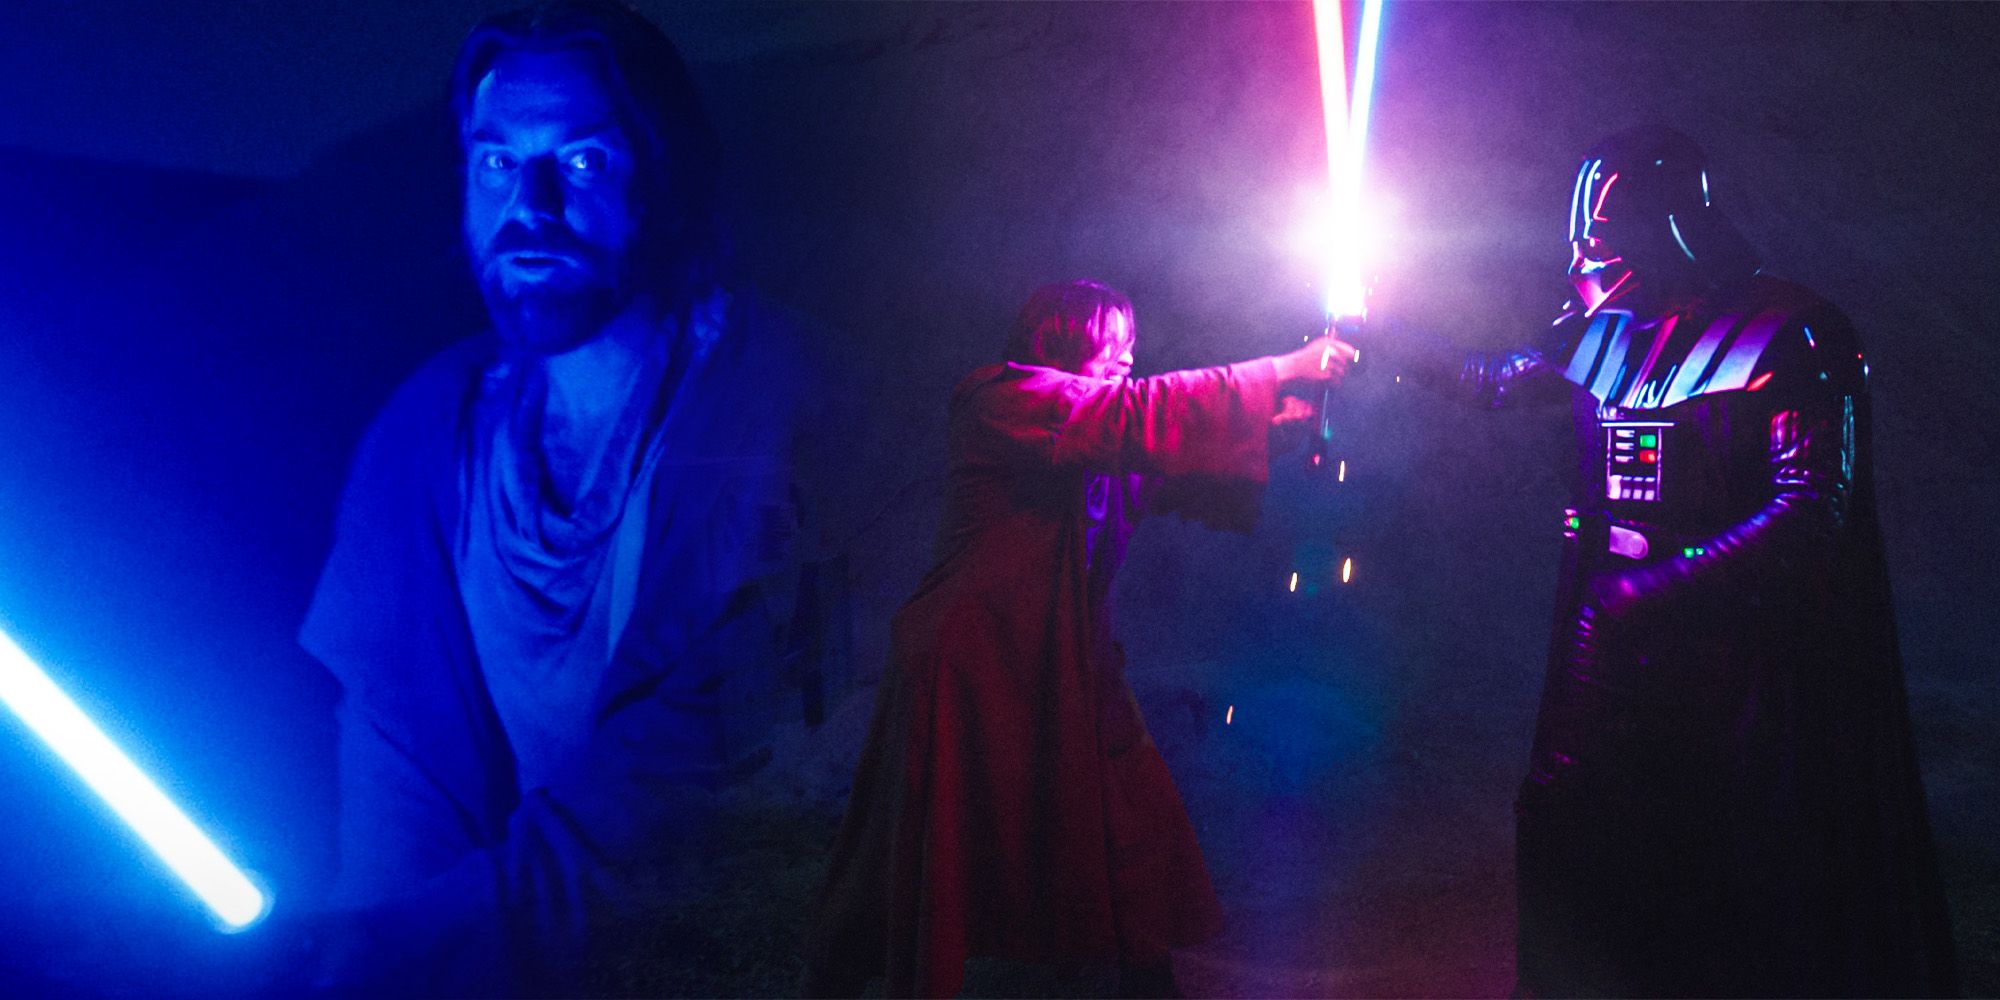 Obi wan Lightsaber Form Secretly Explains Why He Loses To Vader